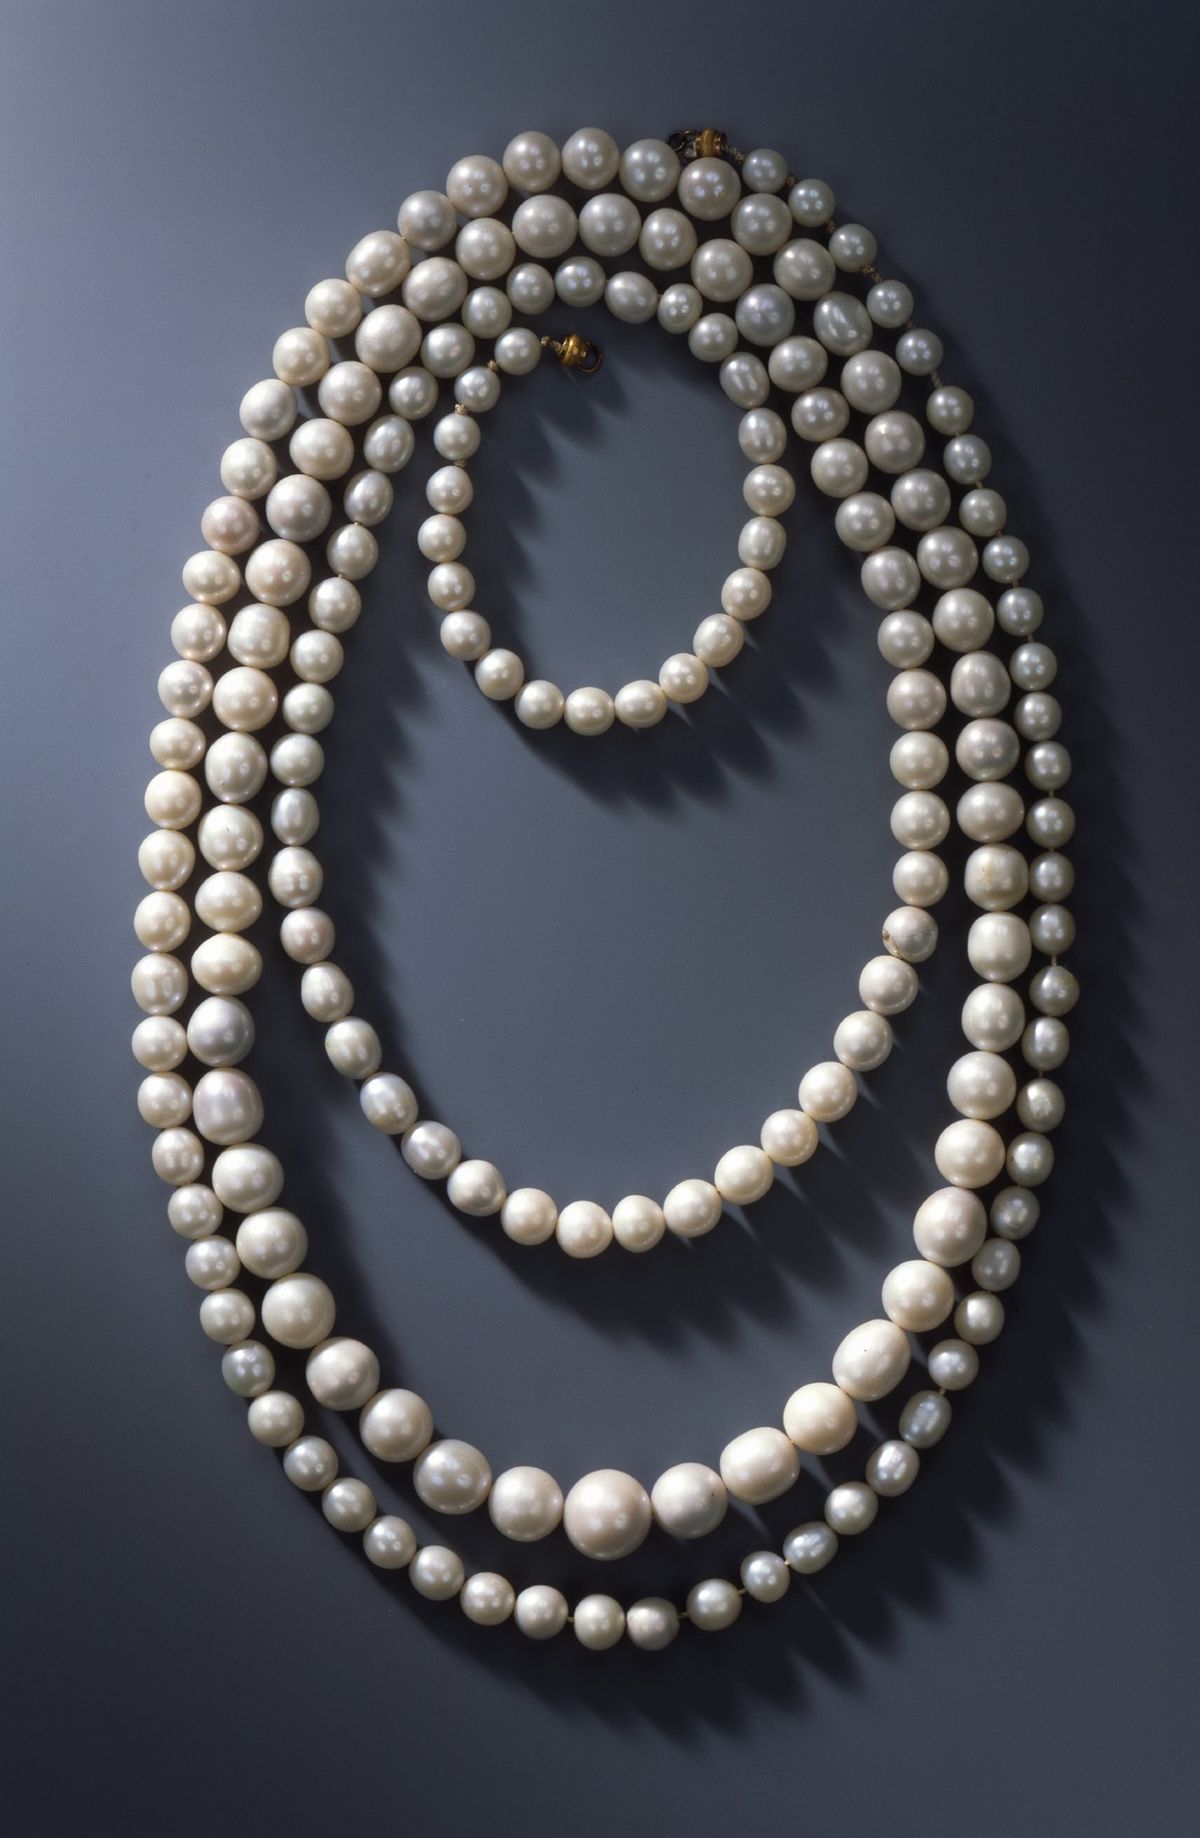 Náhrdelník tvořený 177 perlami